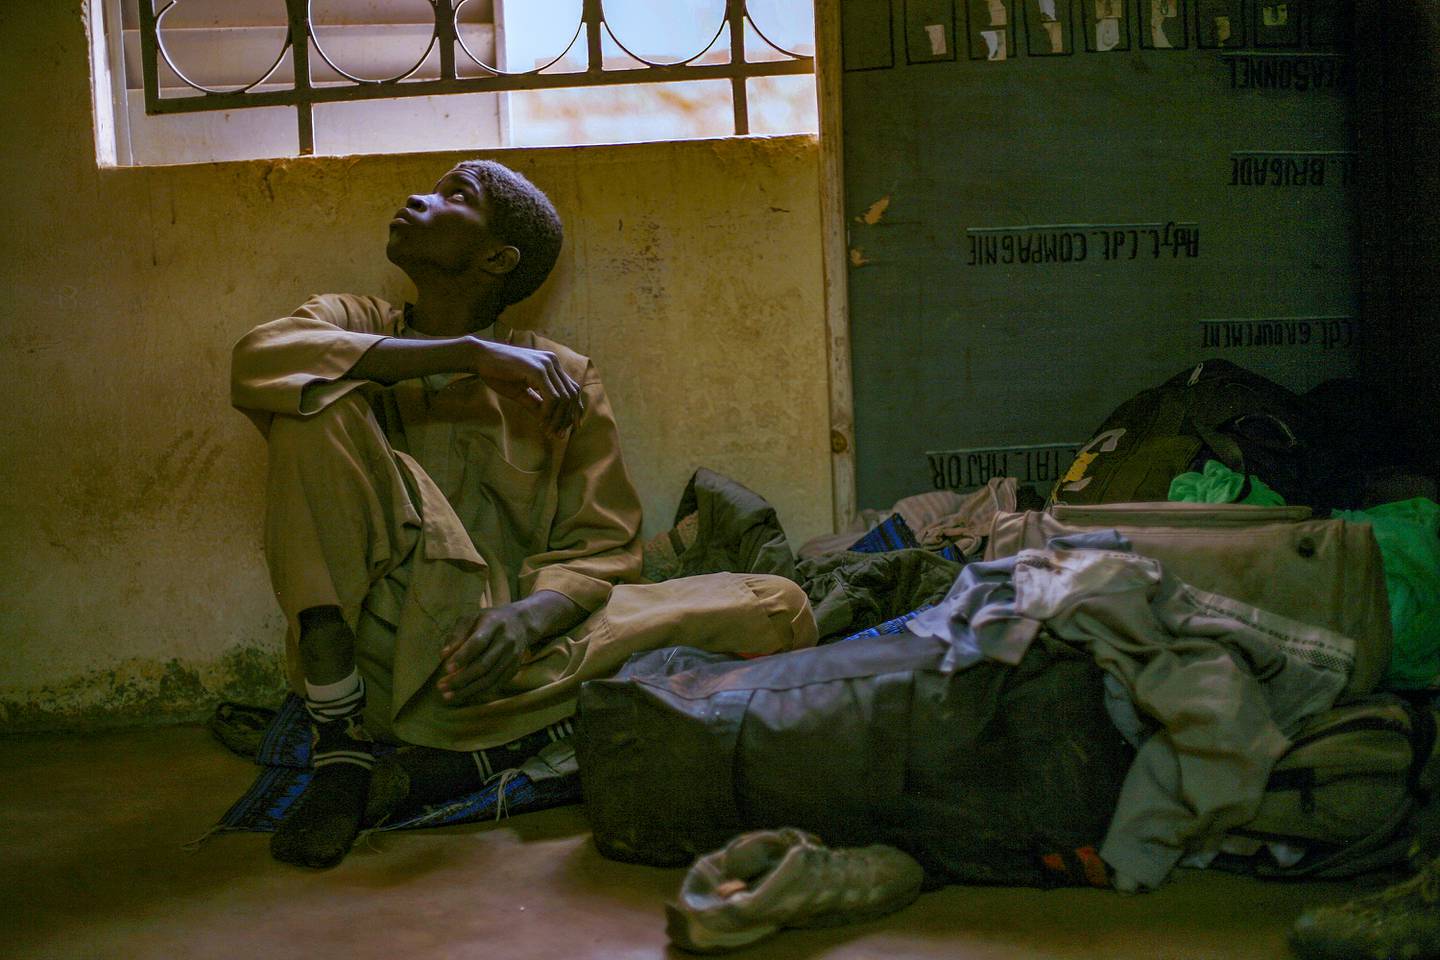 FLERE TIÅR: Barne– og leiesoldater har vært en del av Vest-Afrika i flere tiår. Nå søker kjempende regimer nye samarbeidspartnere  for å slå ned opprørsgrupper i fra Sahel i Vest-Afrika til Mosambik og Kongo.